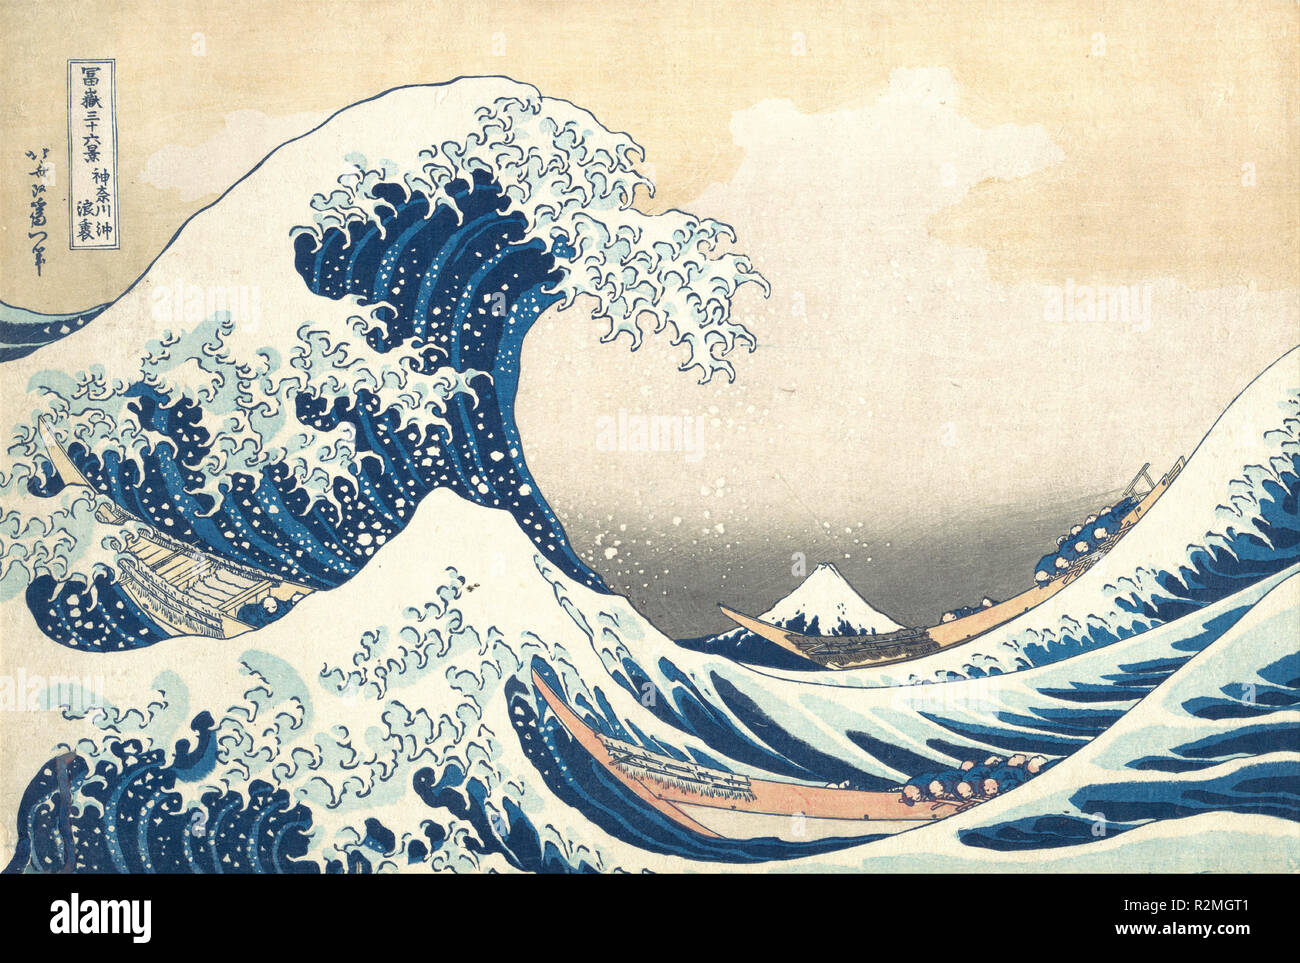 Sous la vague de Kanagawa (Kanagawa oki nami ura), également connu sous le nom de la grande vague, de la série trente-six vues du Mont Fuji Fugaku sanjurokkei (). Artiste : Katsushika Hokusai (Japonais, Tokyo (EDO) 1760-1849 Tokyo (EDO)). Culture : le Japon. Dimensions : 10 1/8 x 14 15/16 in. (25,7 x 37,9 cm). Date : ca. 1830-1832. L'époustouflante composition de cette estampe, dit pour avoir inspiré la Mer de Debussy (La Mer) et Rilke, der Berg (la Montagne), assure sa réputation comme une icône de l'art mondial joué habilement Hokusai avec la perspective de faire du Japon le plus grandiose mountain apparaître comme un petit trian Banque D'Images